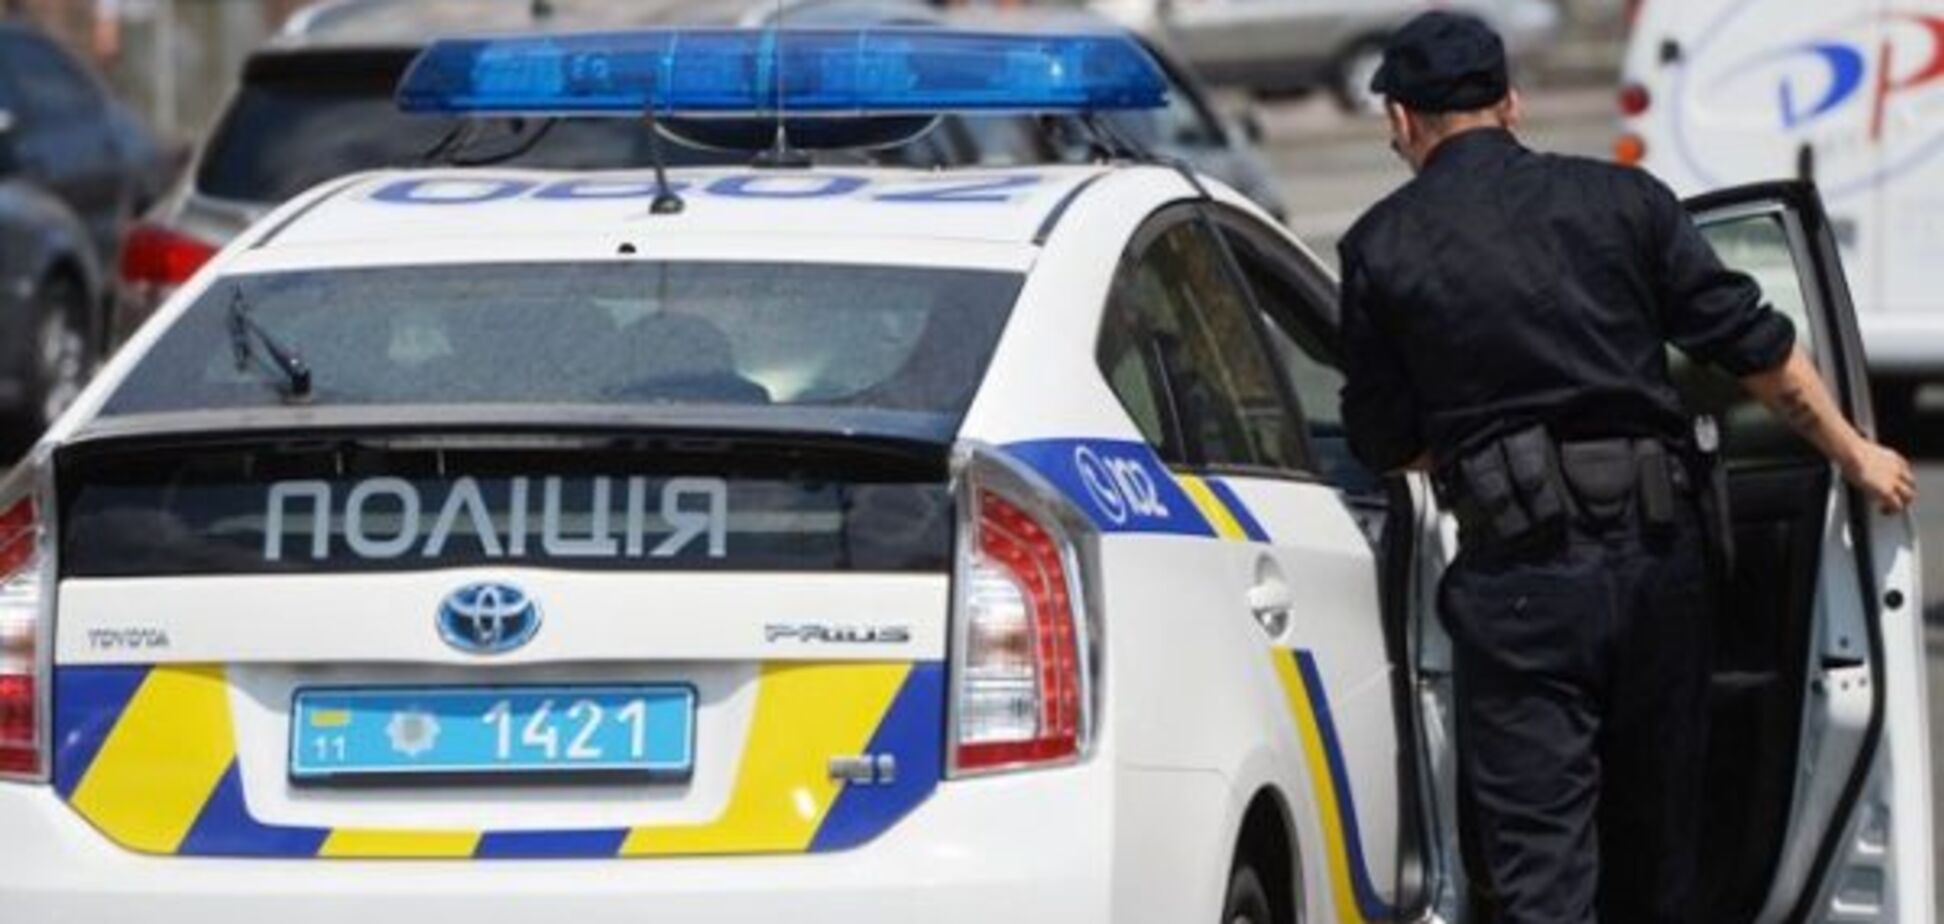 'Швидкість перевищена': у поліції пояснили дивні смс-повідомлення водіям у Києві